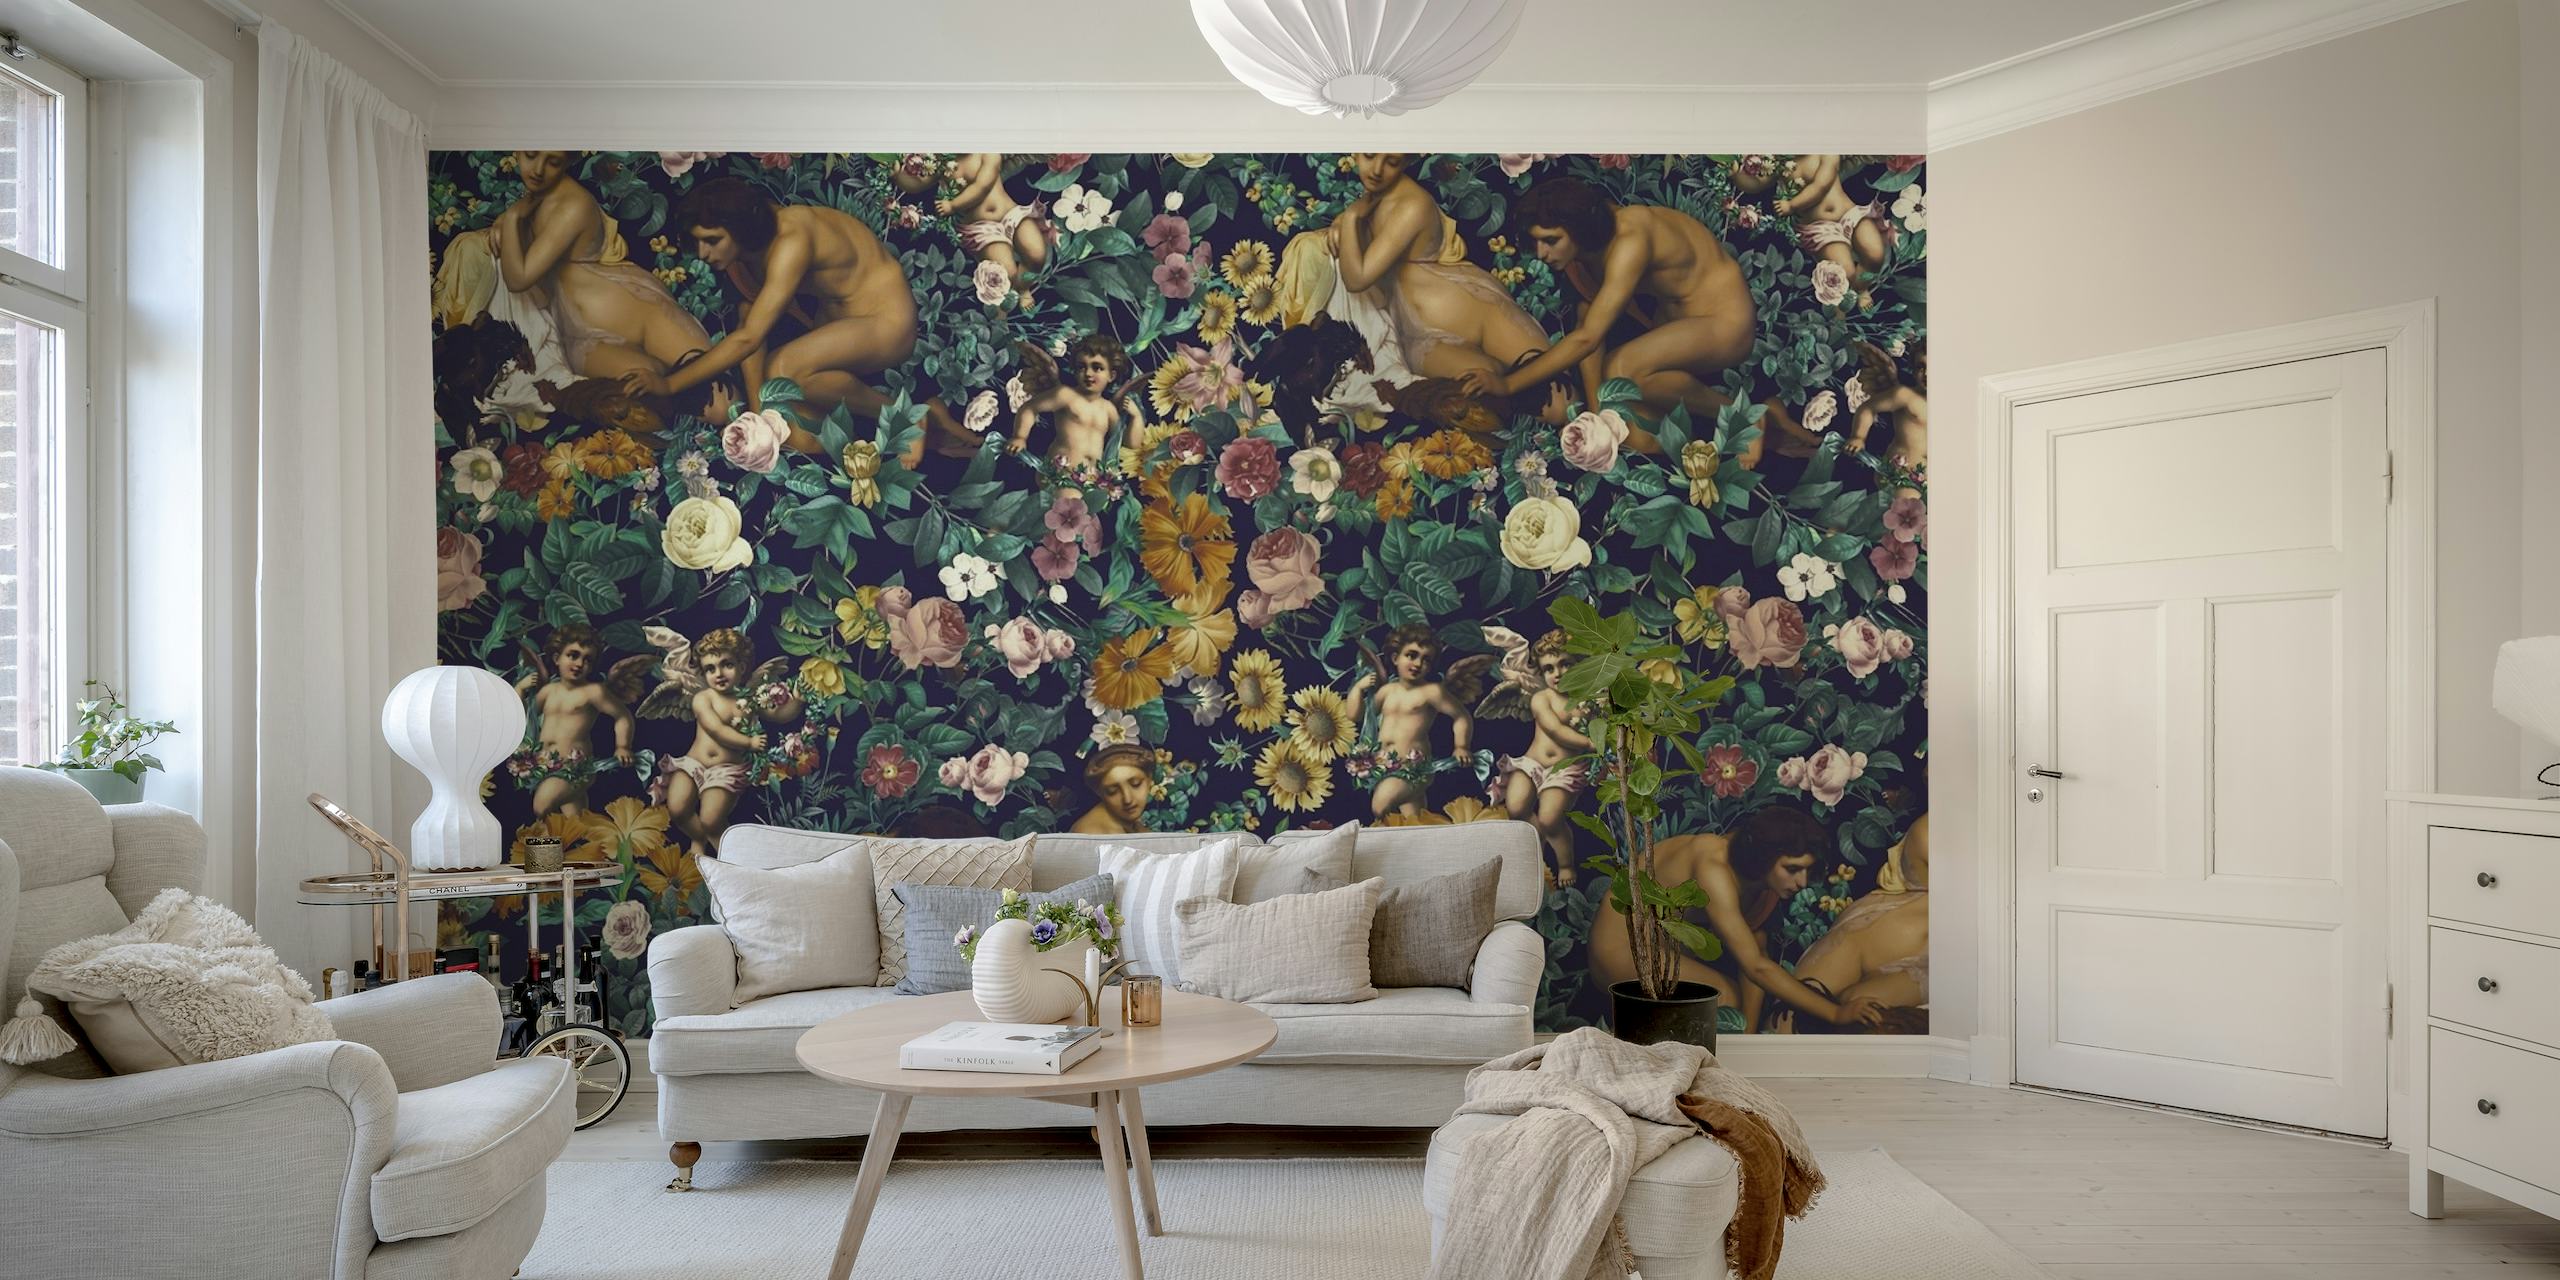 Figuras gregas clássicas em meio a um fotomural vinílico de parede com padrão floral exuberante